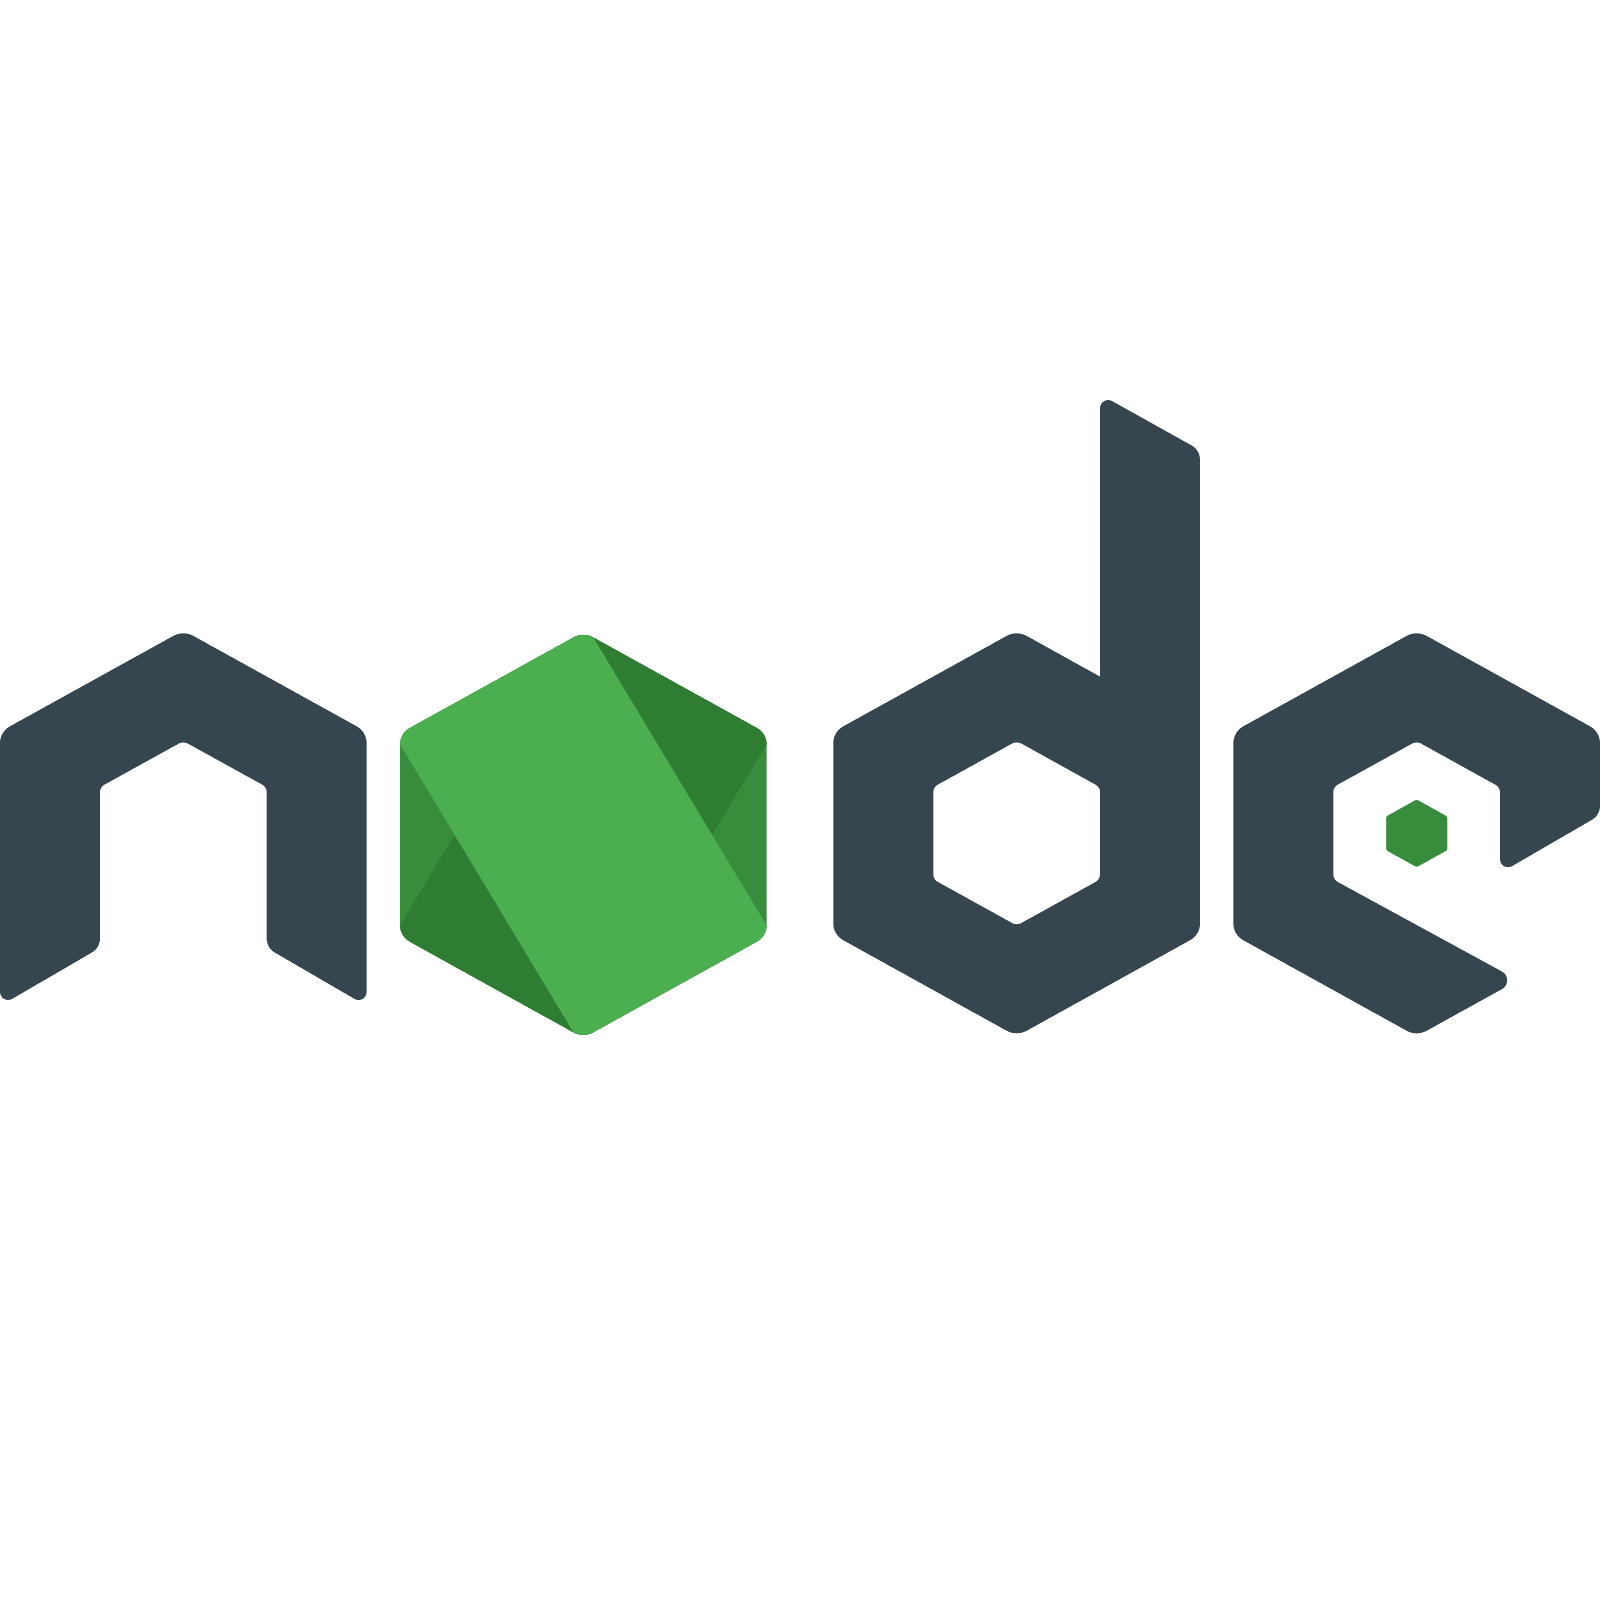 Https nodejs org. Node js icon. Node js значок. Node js logo PNG. Последняя версия node js.